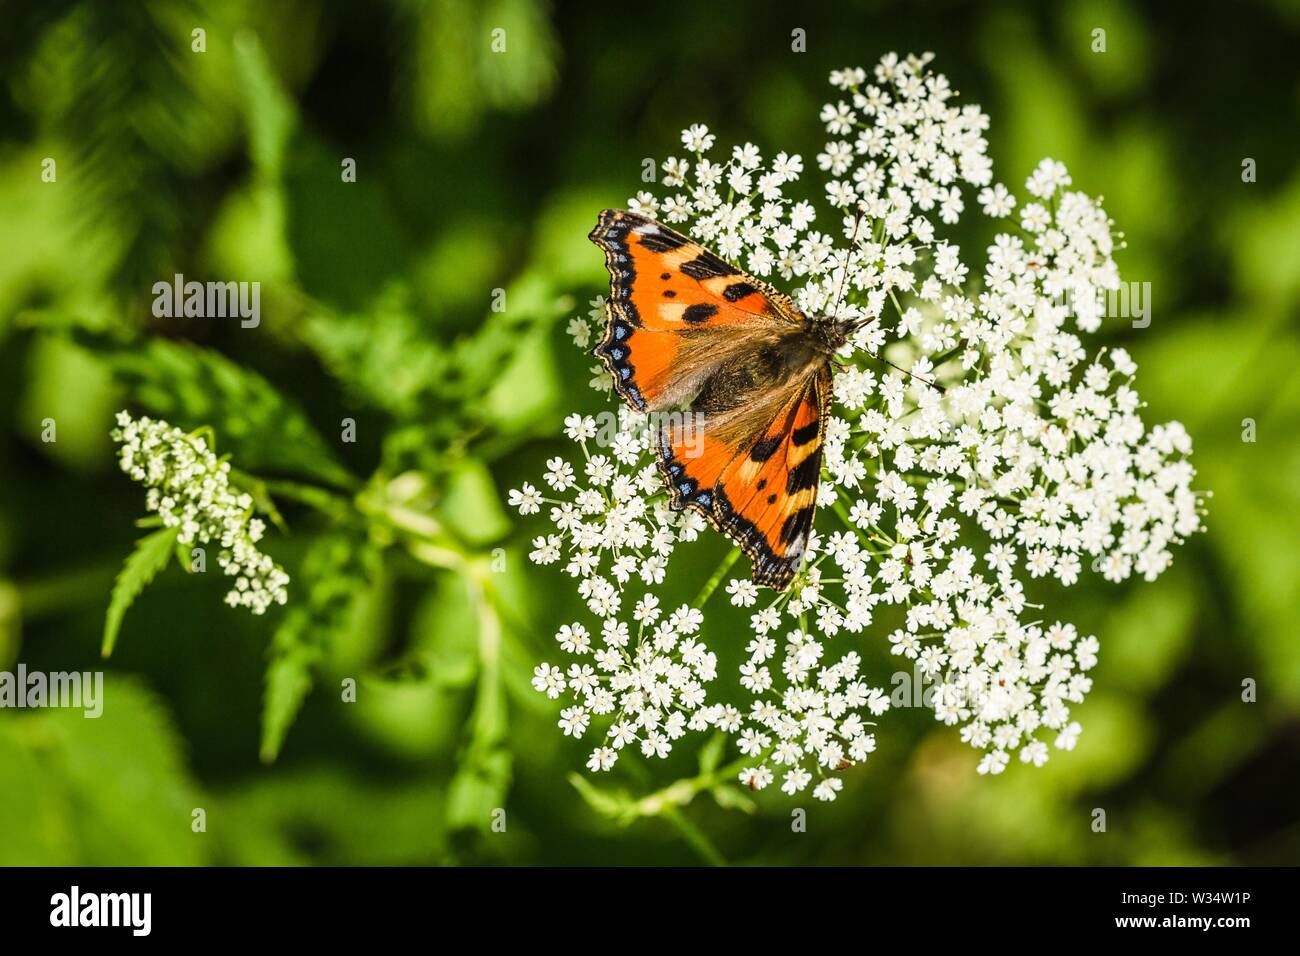 La petite écaille de papillon, un papillon coloré orange rougeâtre avec des taches bleu et noir, assis sur fleur blanche de plus en plus pré. Banque D'Images